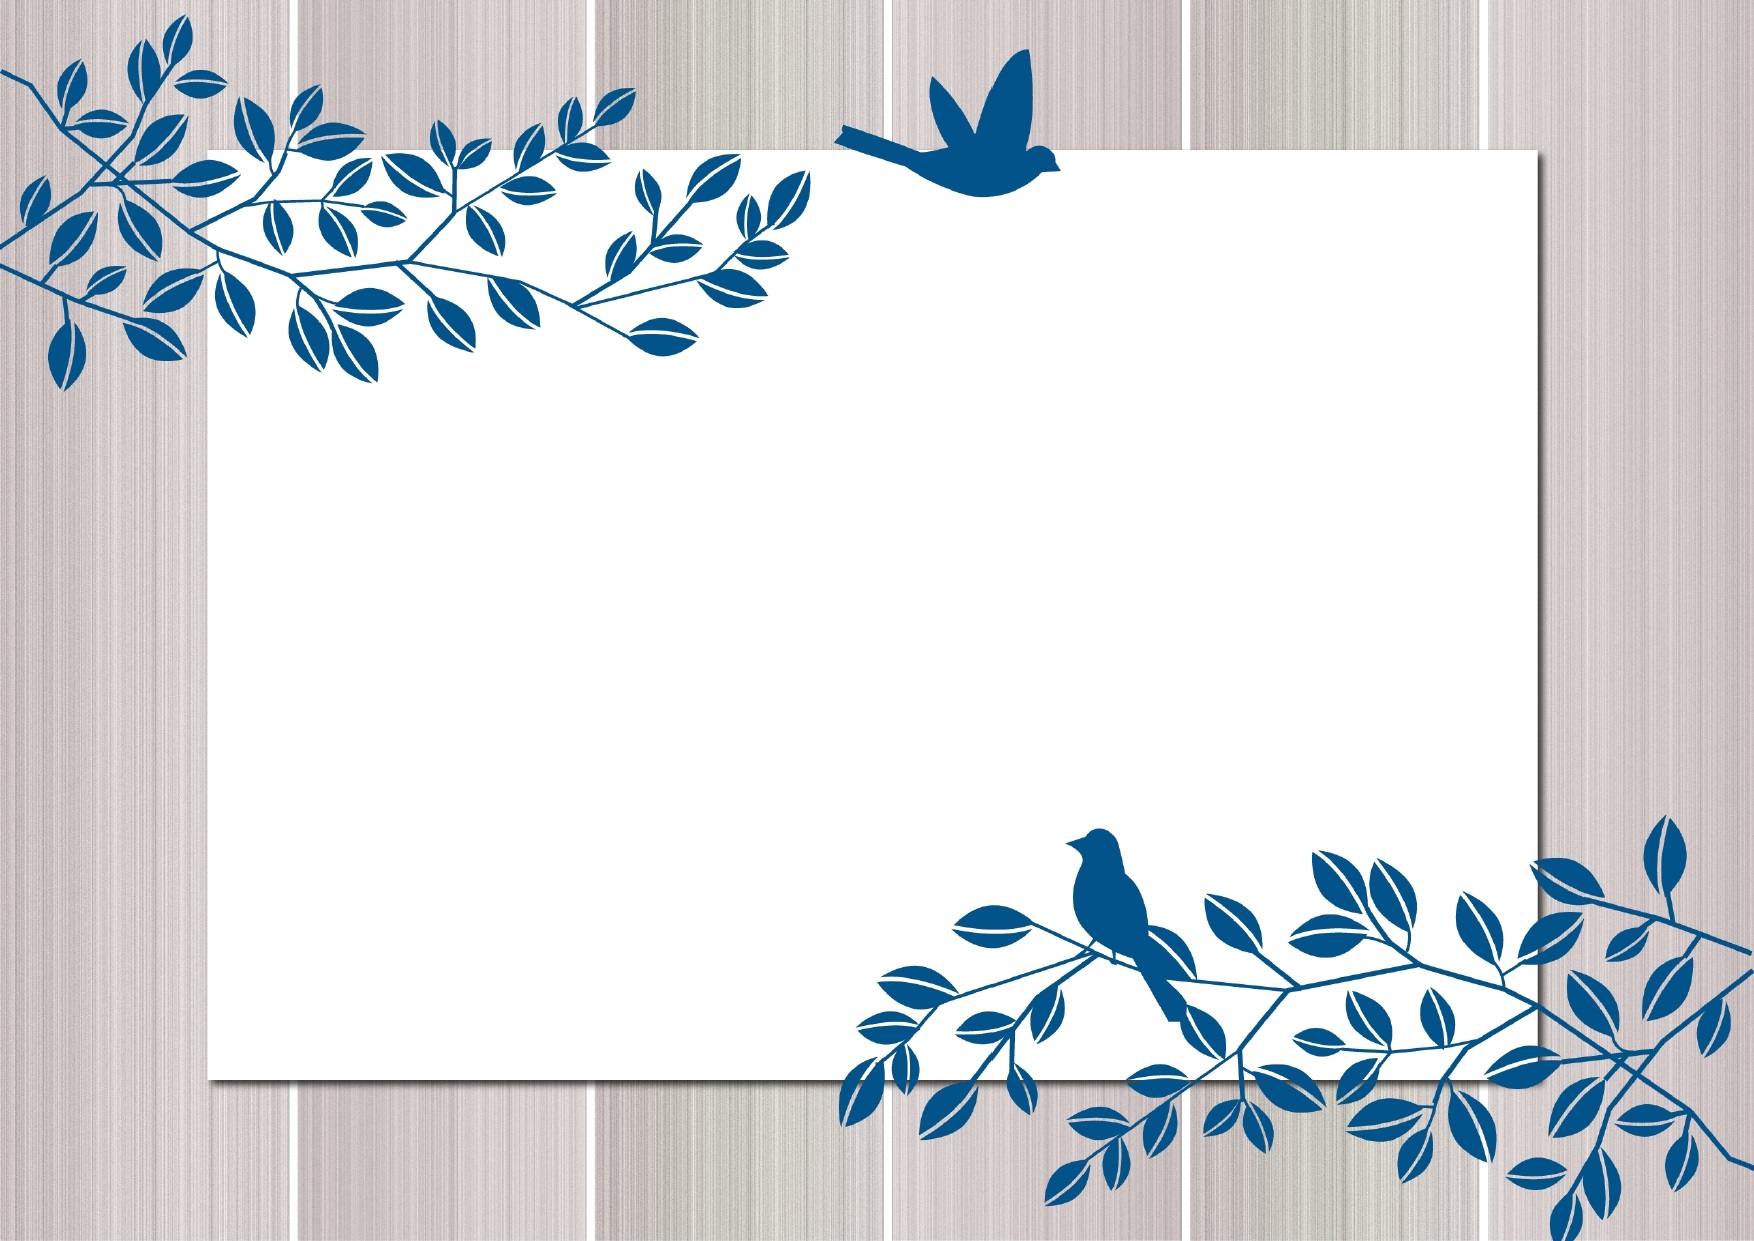 かわいい 葉っぱと青い鳥の無料イラストフレーム 飾り枠の素材 無料ダウンロード テンプレルン 無料ダウンロード テンプレルン